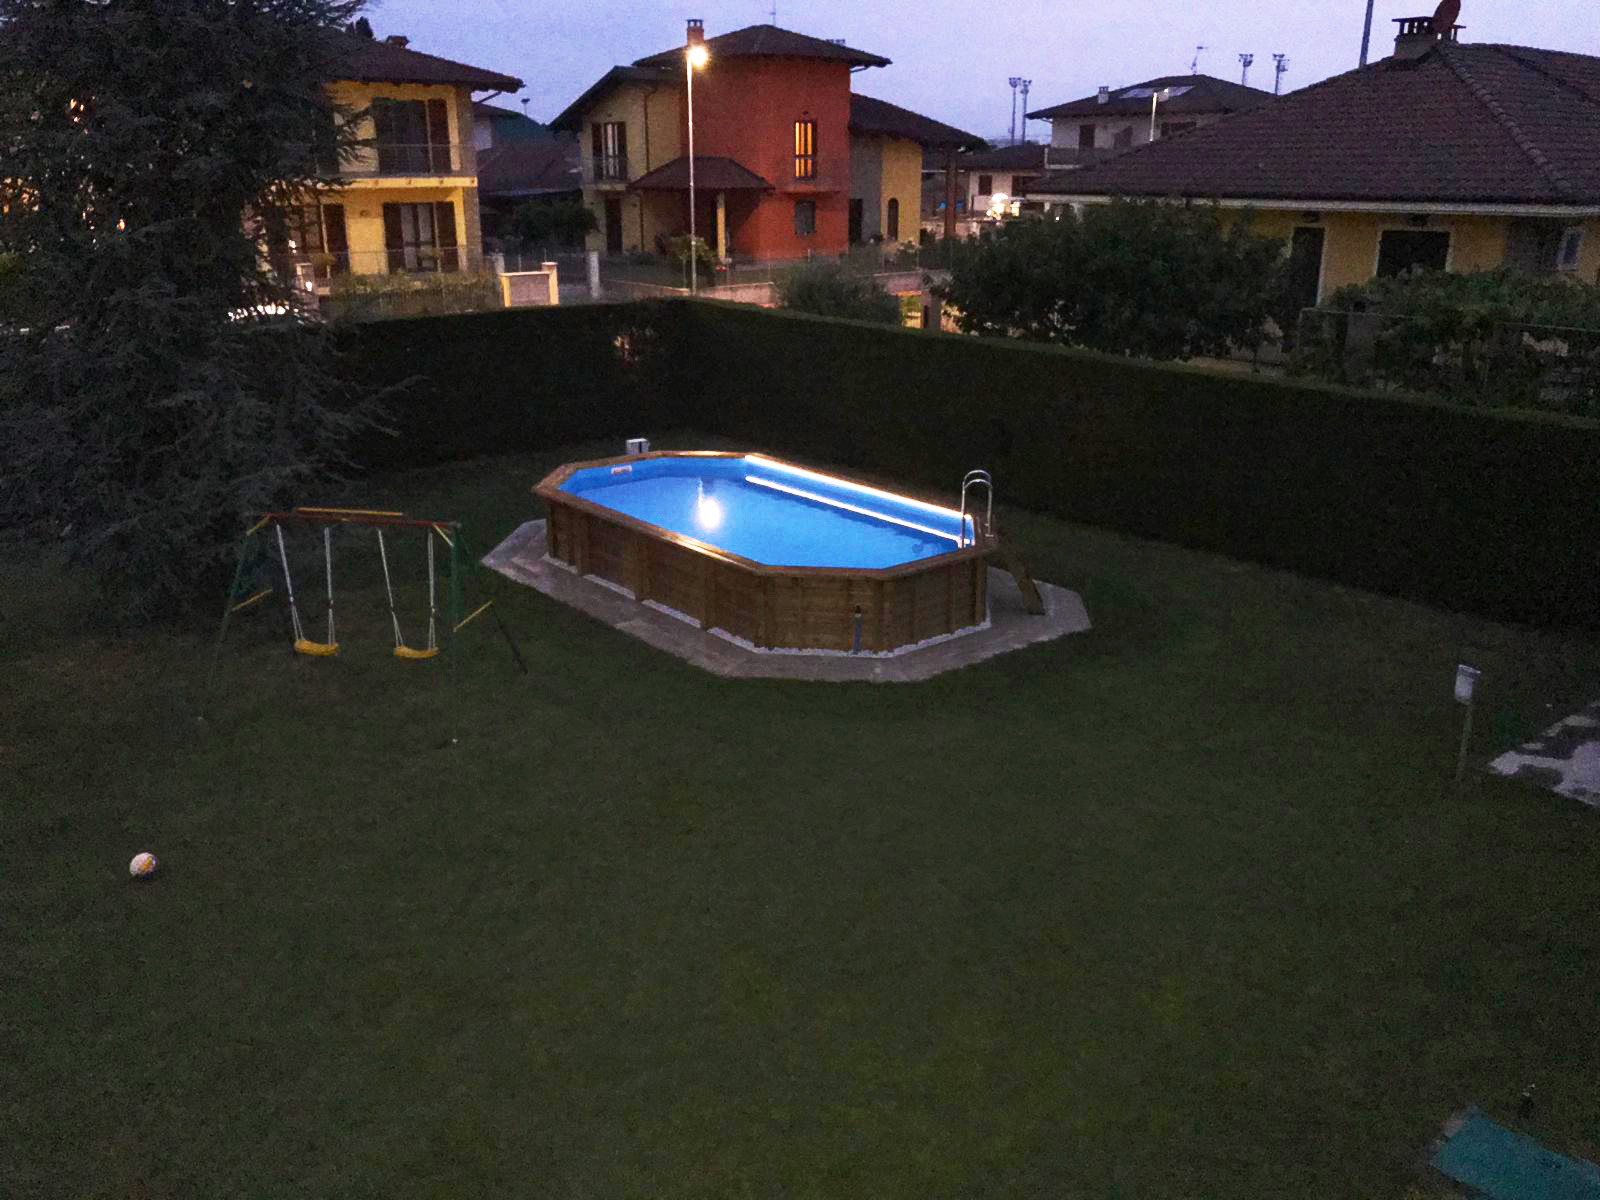 Dettagli Come illuminare una piscina fuori terra con una striscia a led a Roreto di Cherasco (CN)